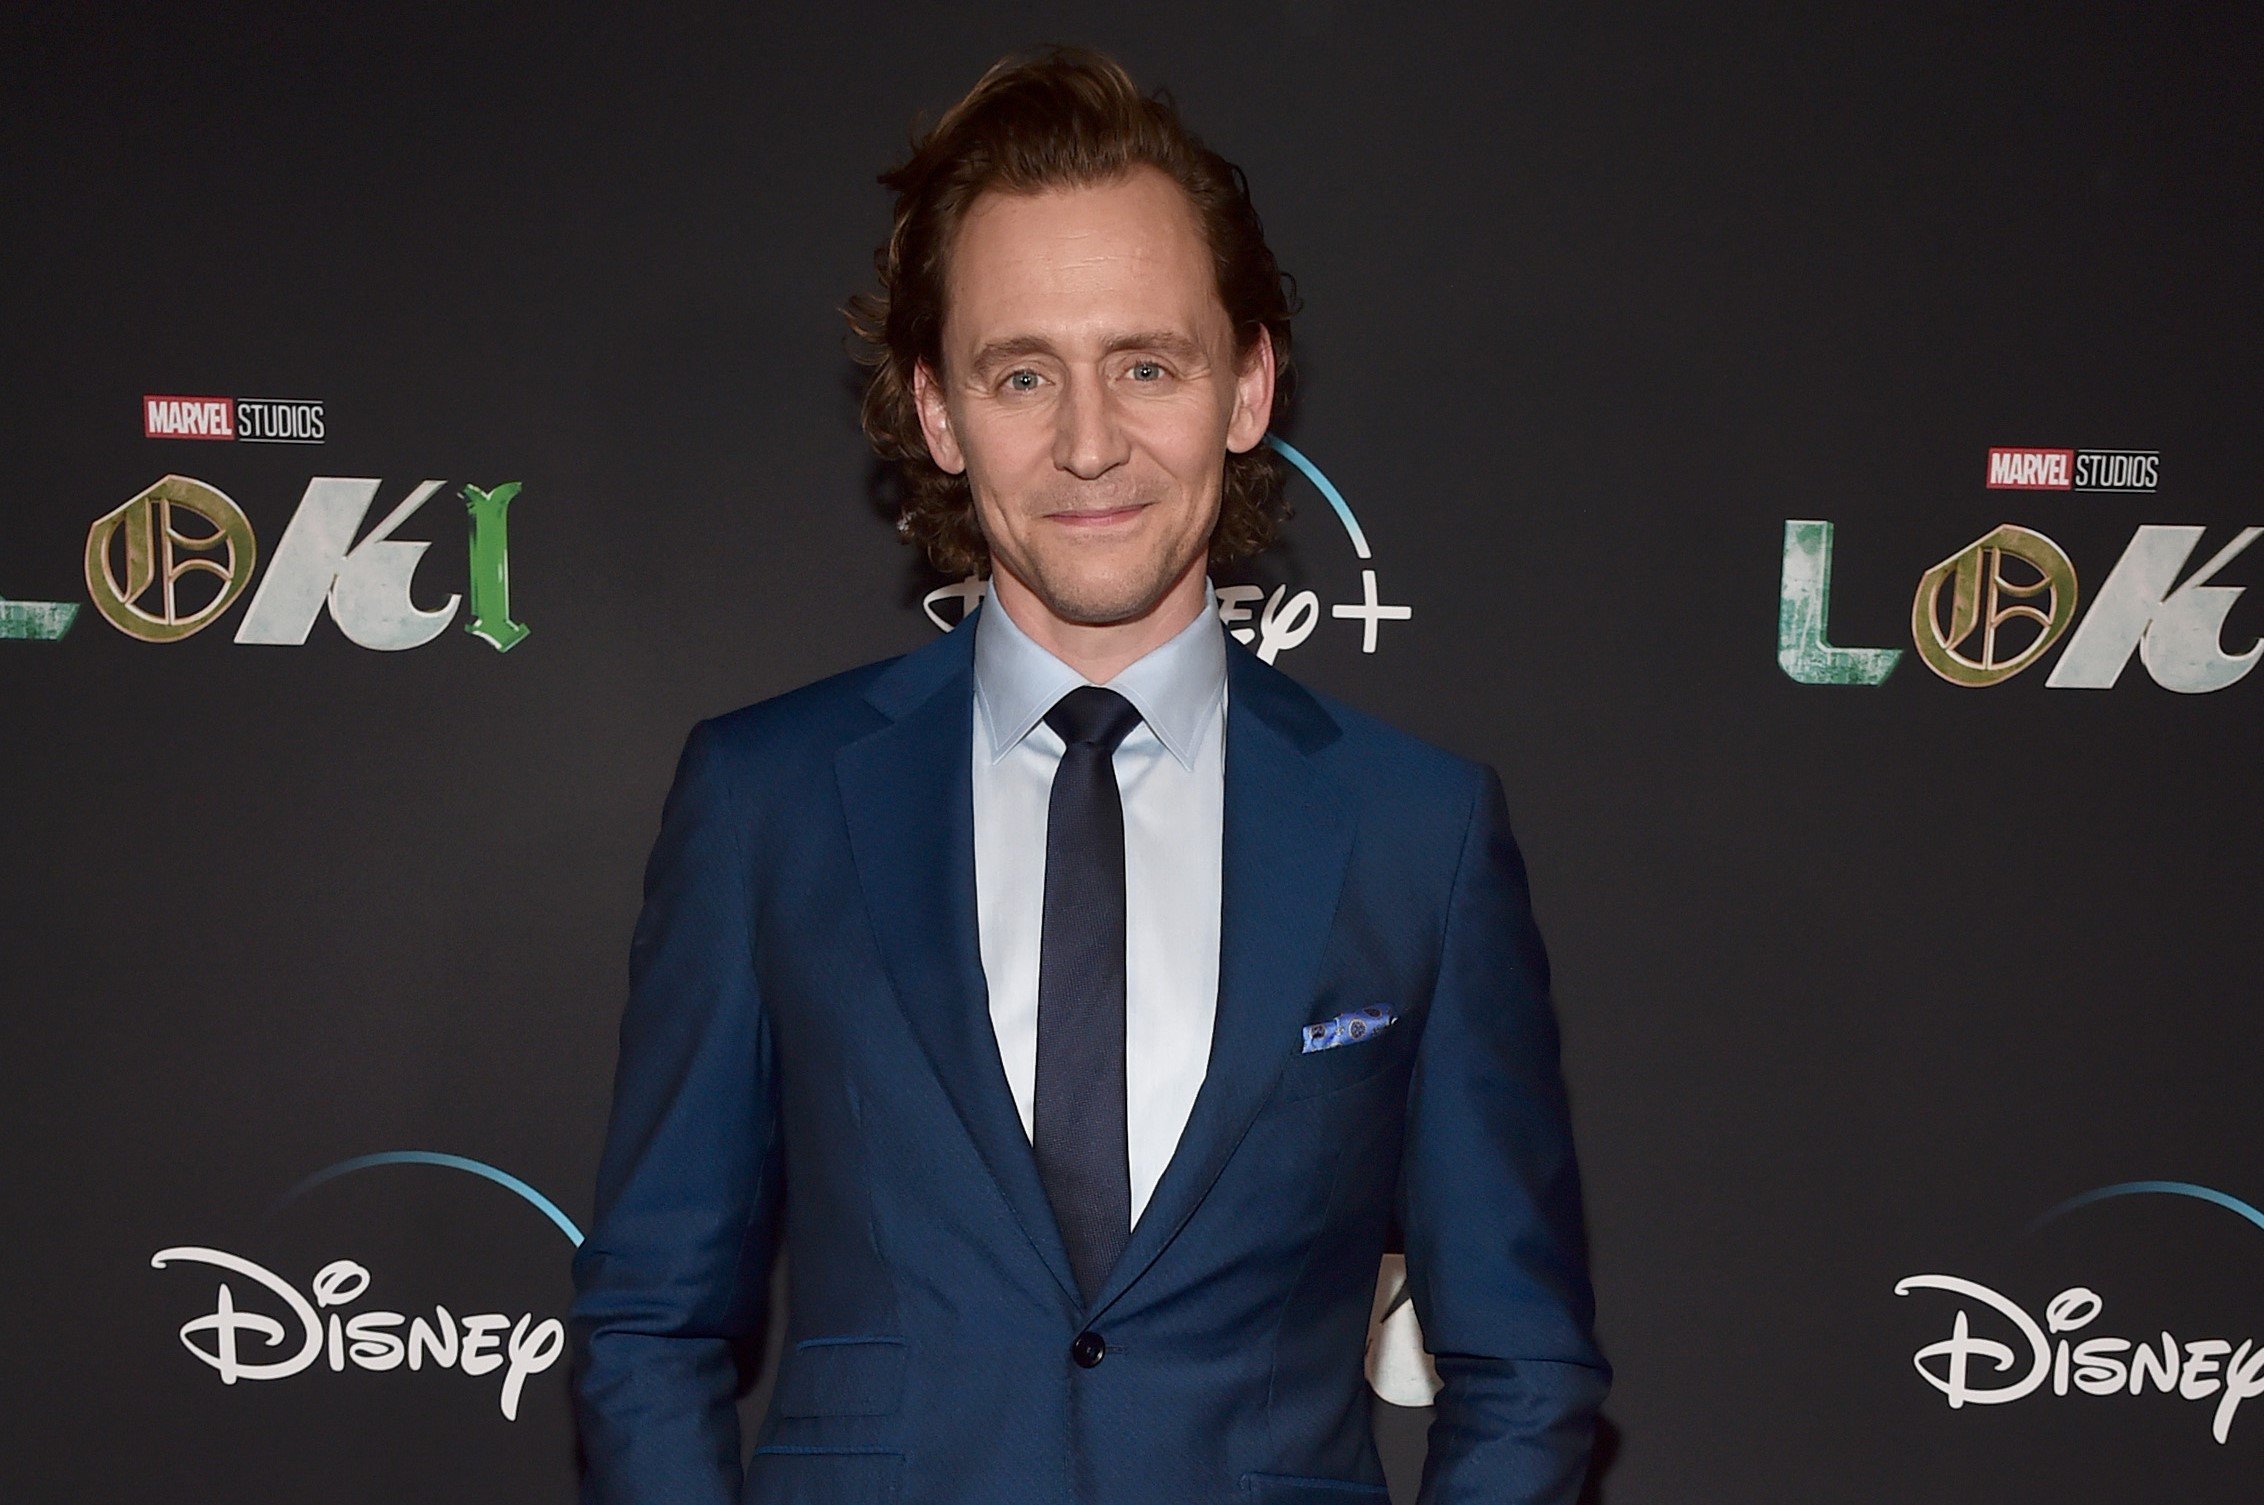 在《雷神》系列电影中扮演洛基的汤姆·希德勒斯顿(Tom Hiddleston)穿了一套深蓝色西装